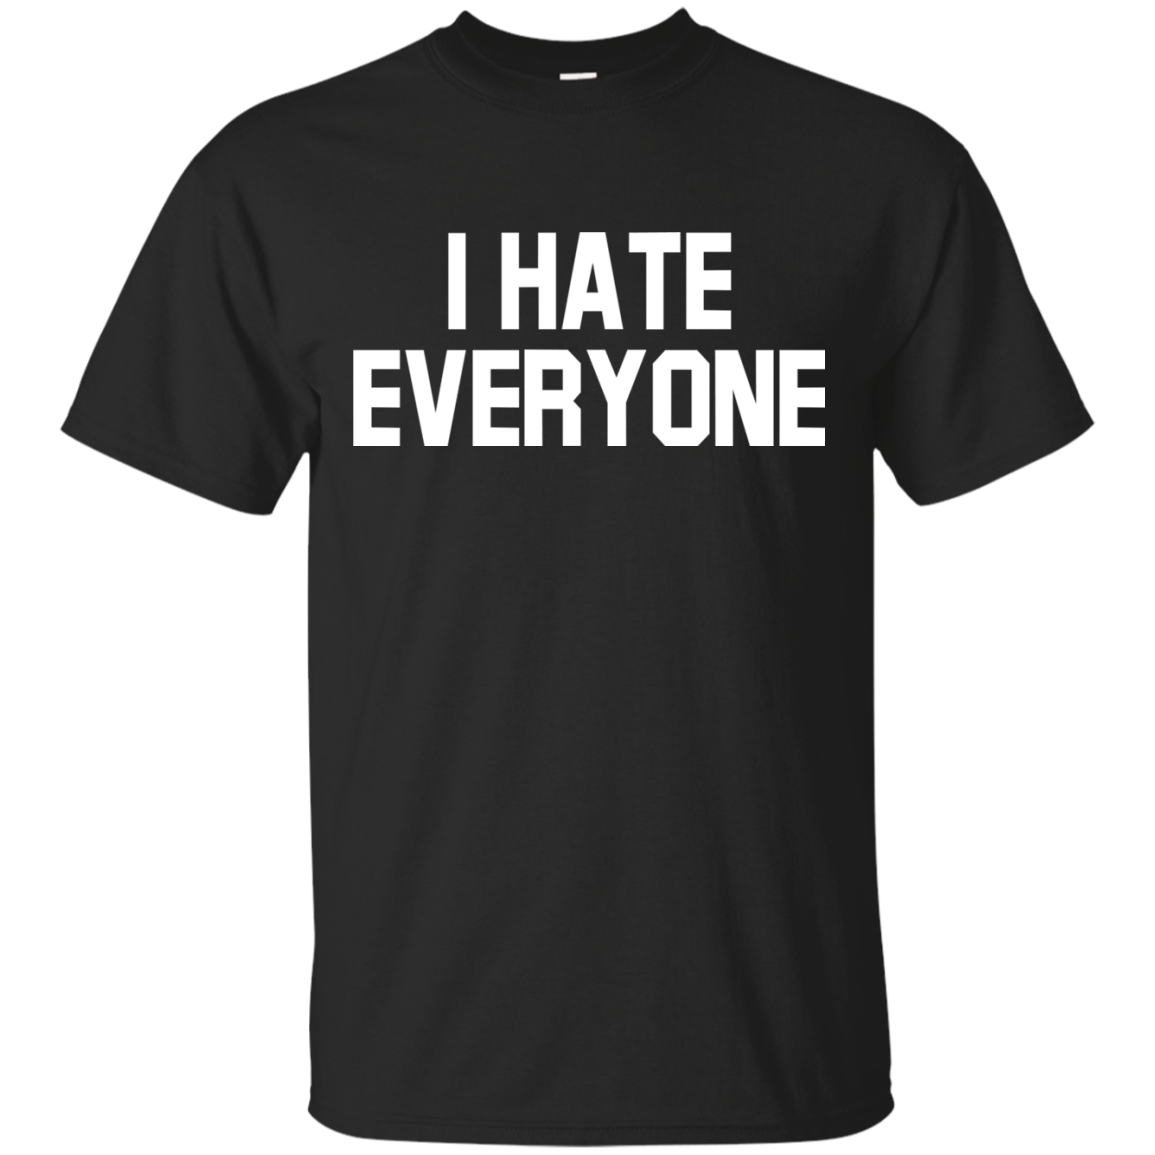 Hate Shirts I Hate Everyone - Amyna